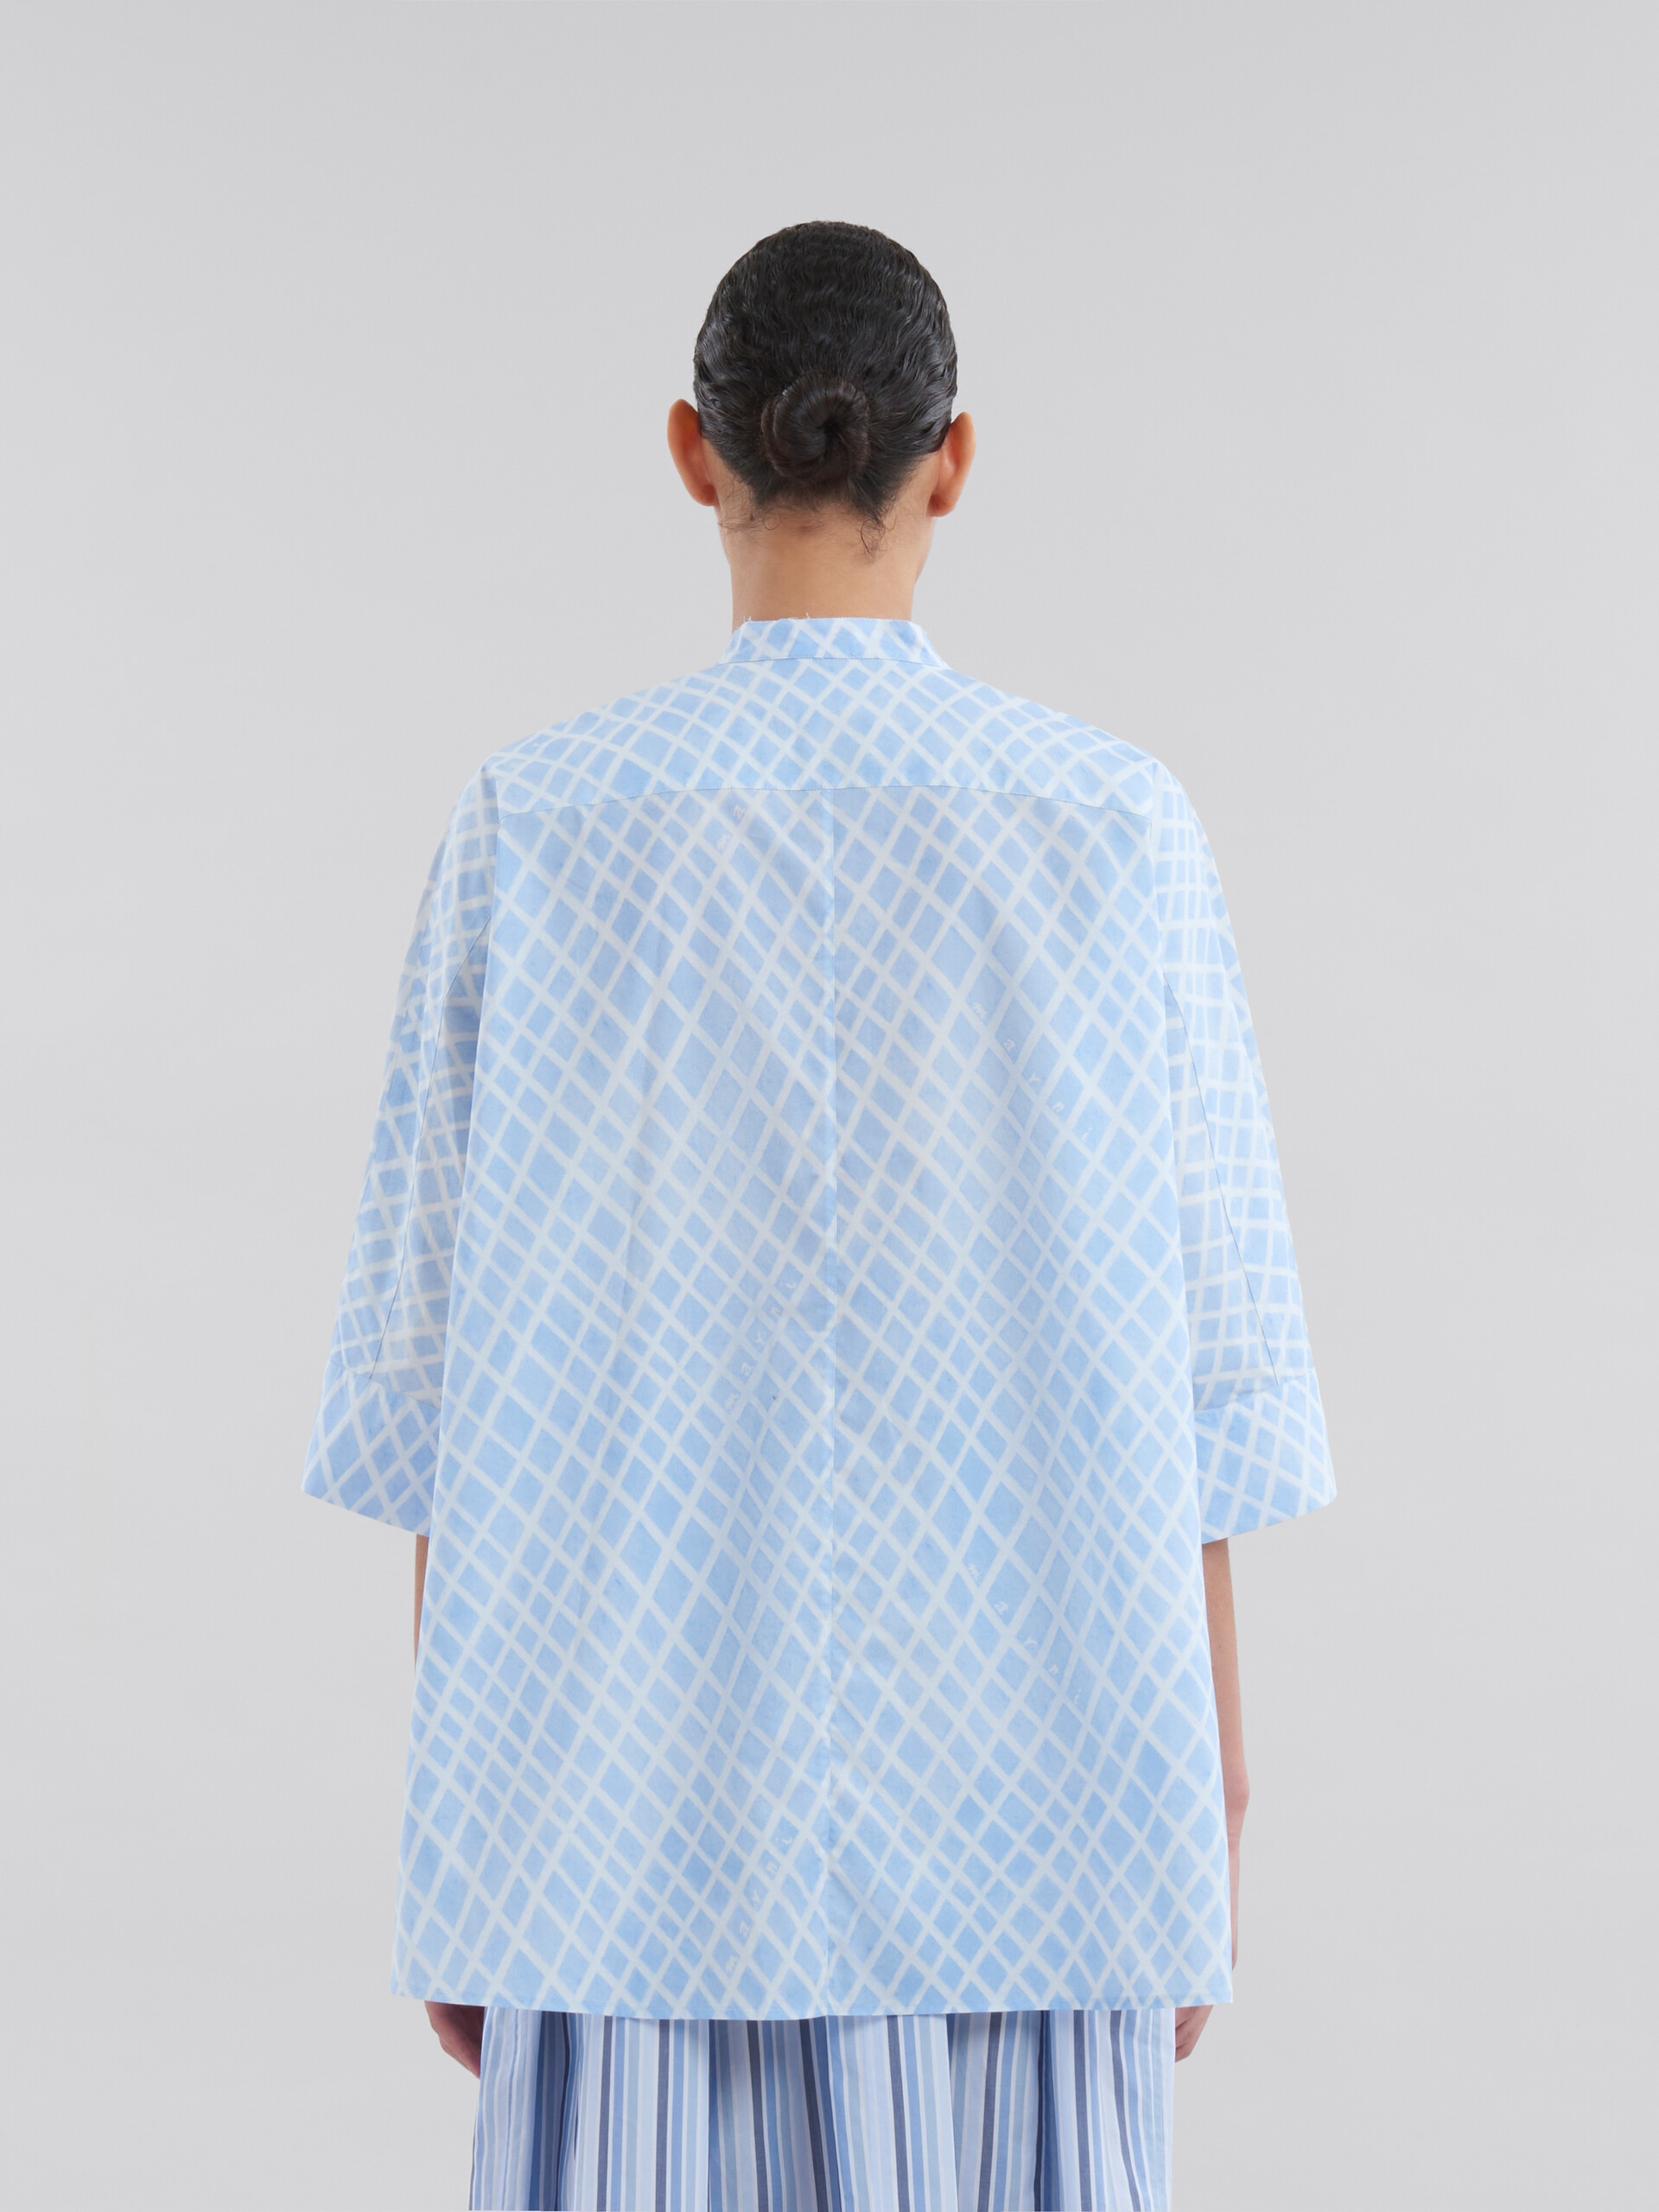 Camisa estilo kimono azul claro de popelina con estampado Landscapes - Camisas - Image 3